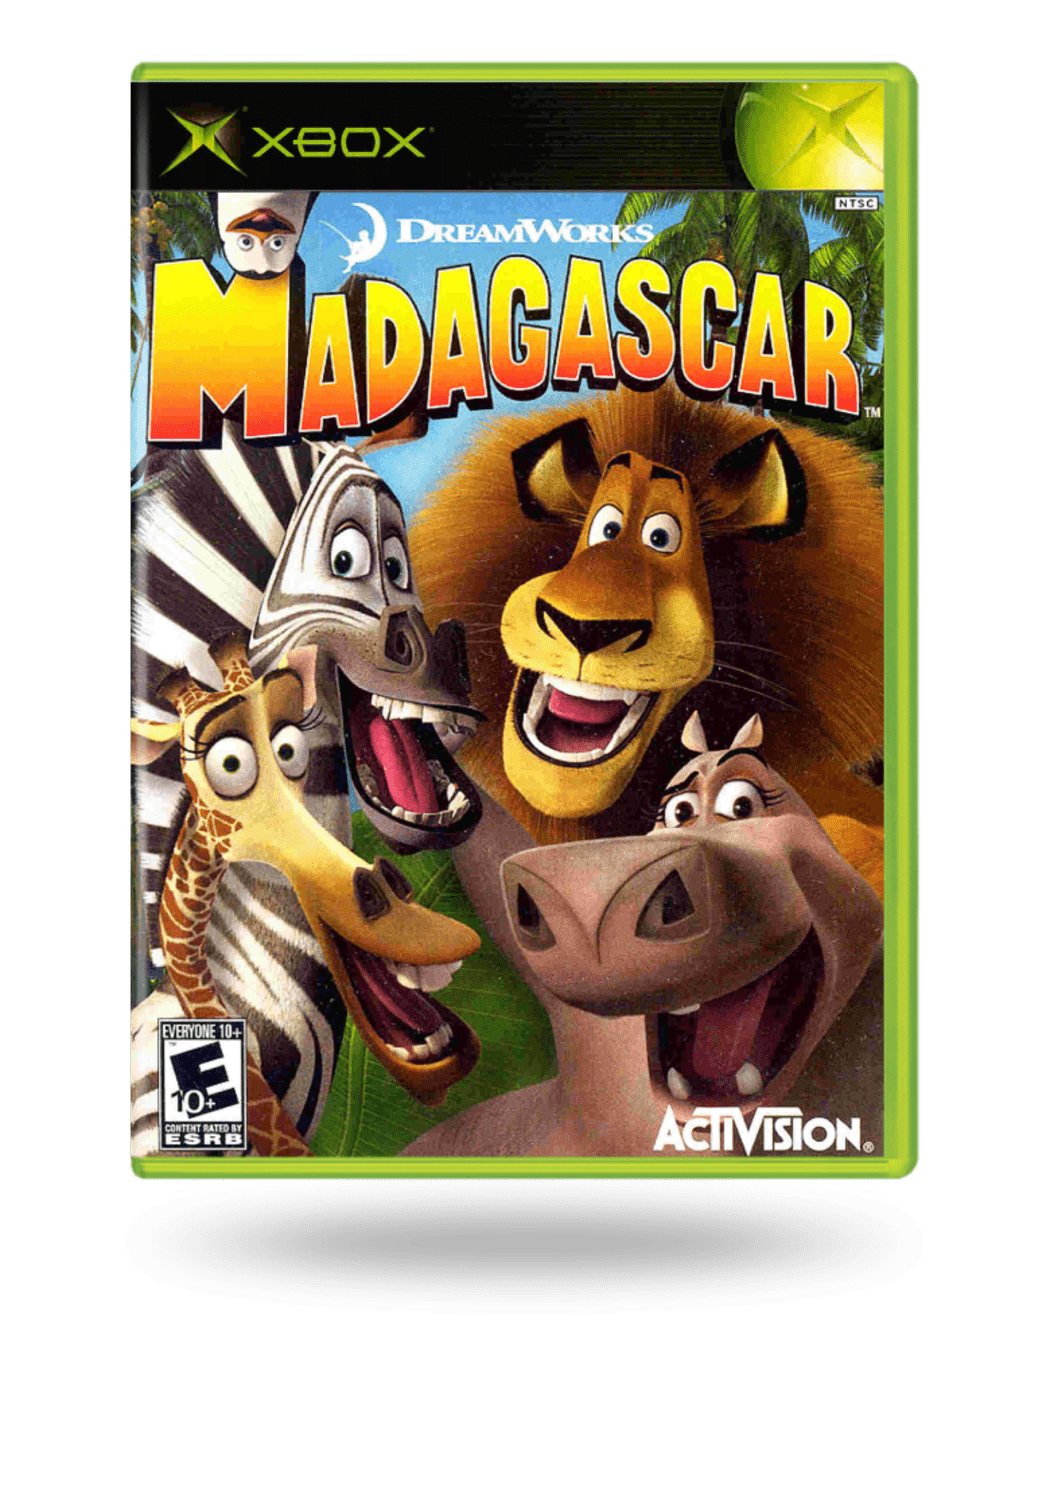 Madagascar: Escape 2 Africa (Xbox 360) Full HD - 1080 